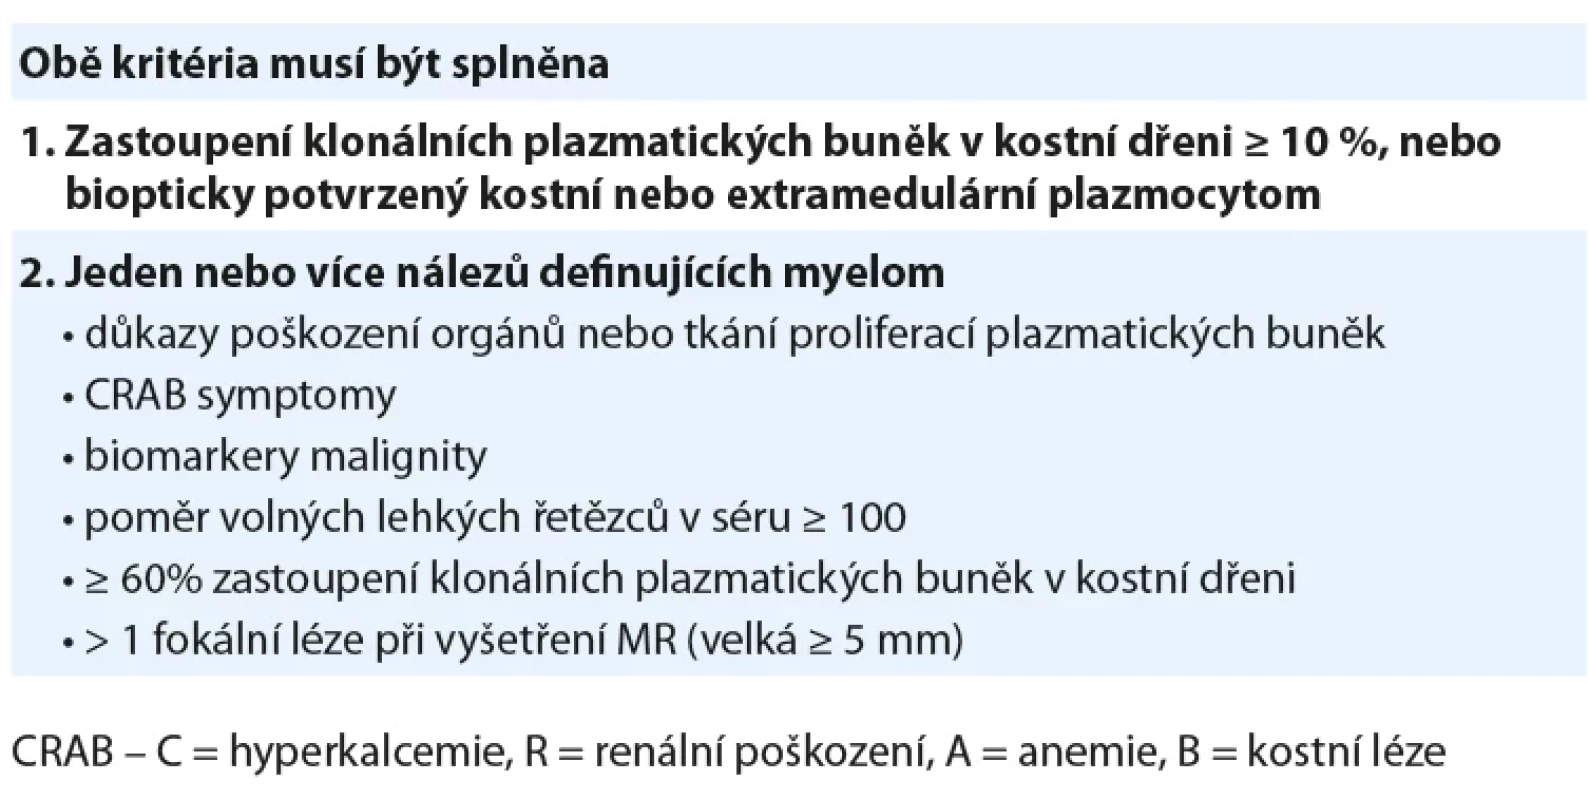 Diagnostická kritéria mnohočetného myelomu. Upraveno podle [14].